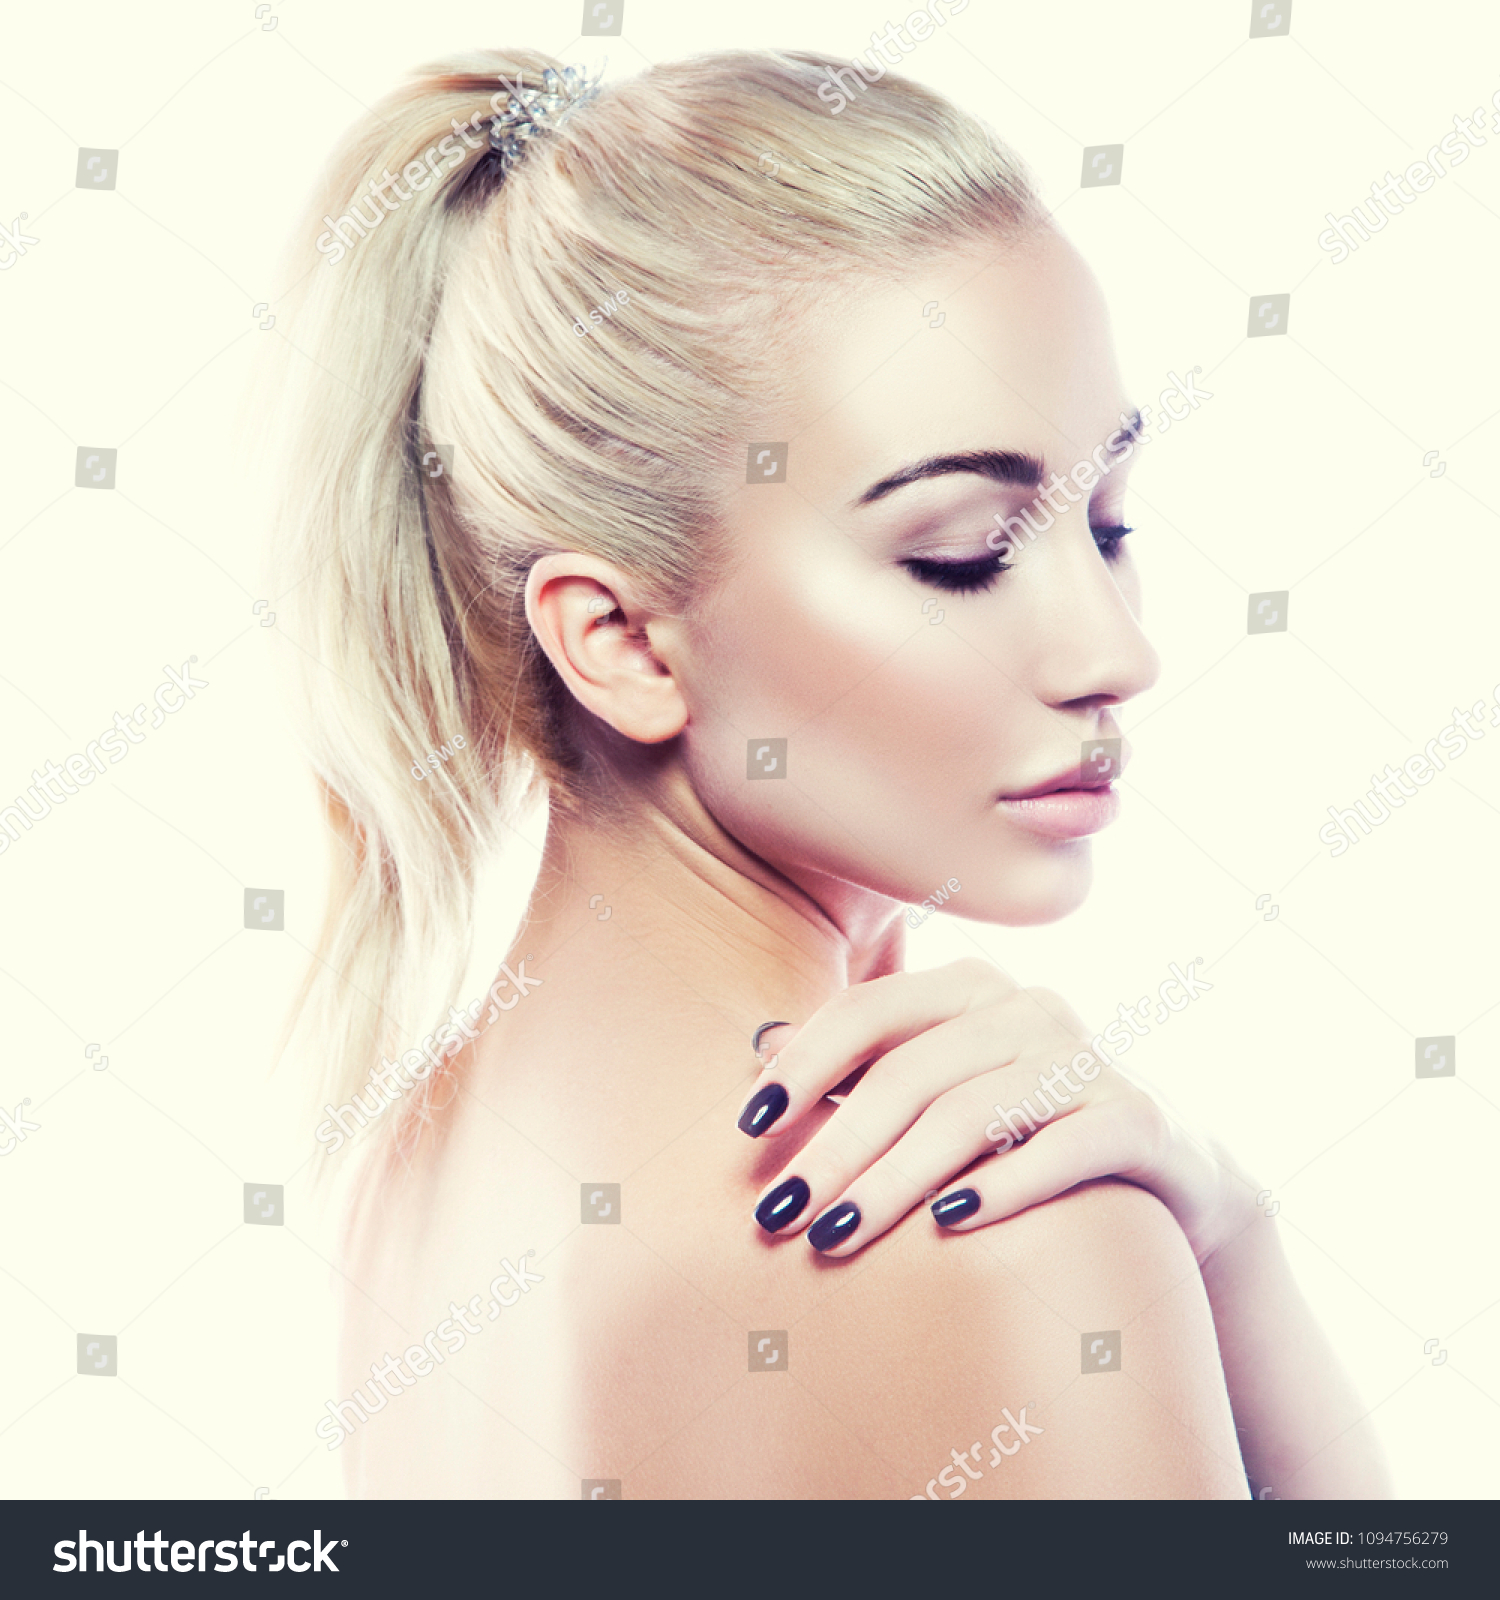 Woman Beauty Treatment Portrait Natural Makeup Stock Photo Edit Now 1094756279